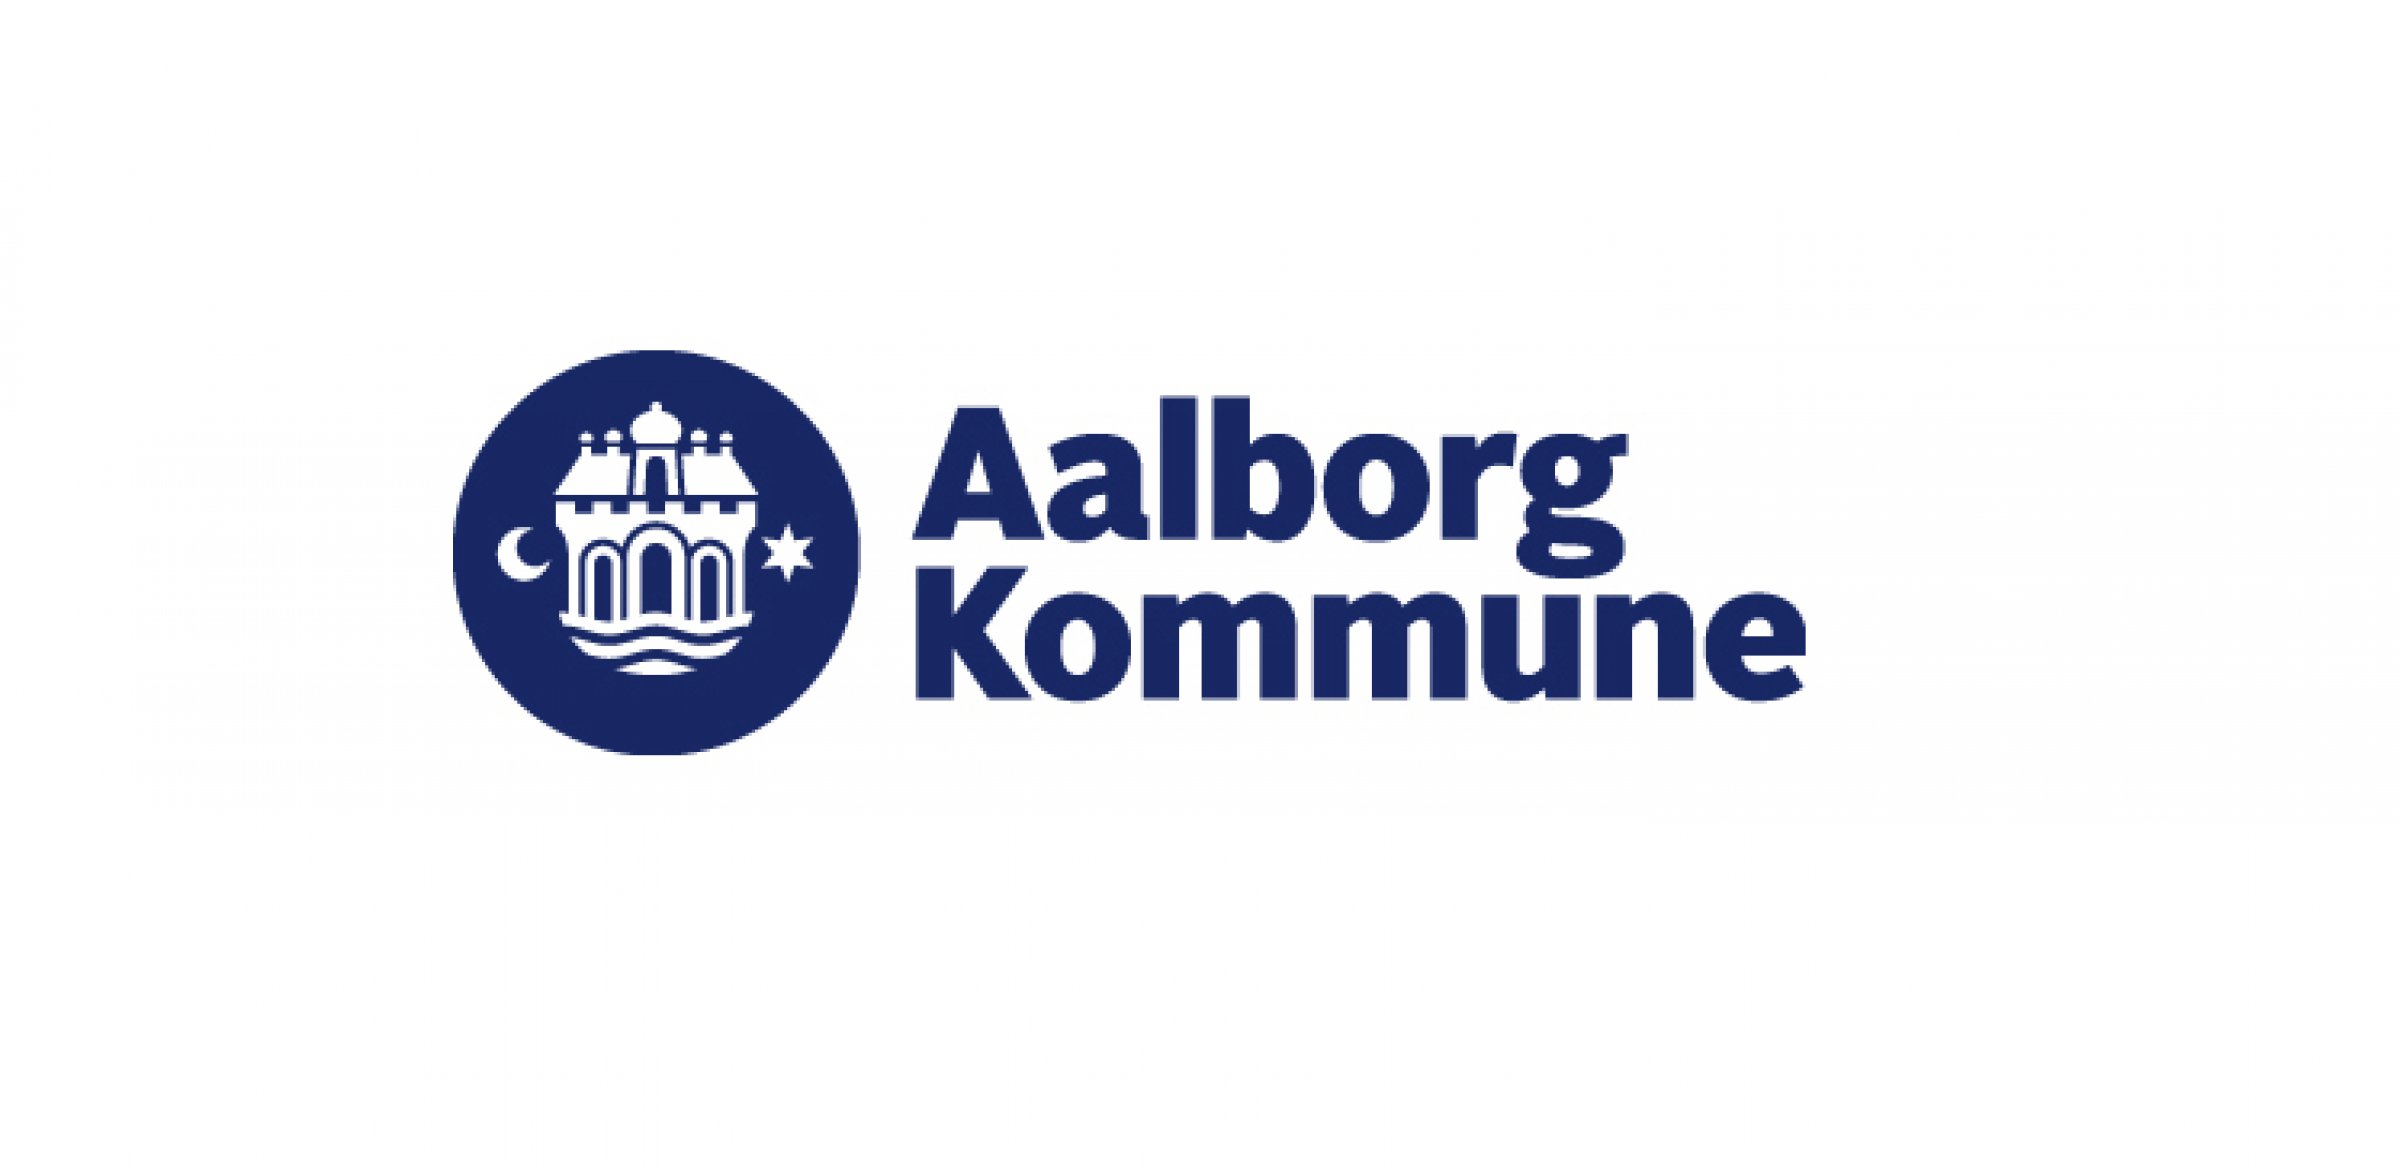 aalborg kommunes logo